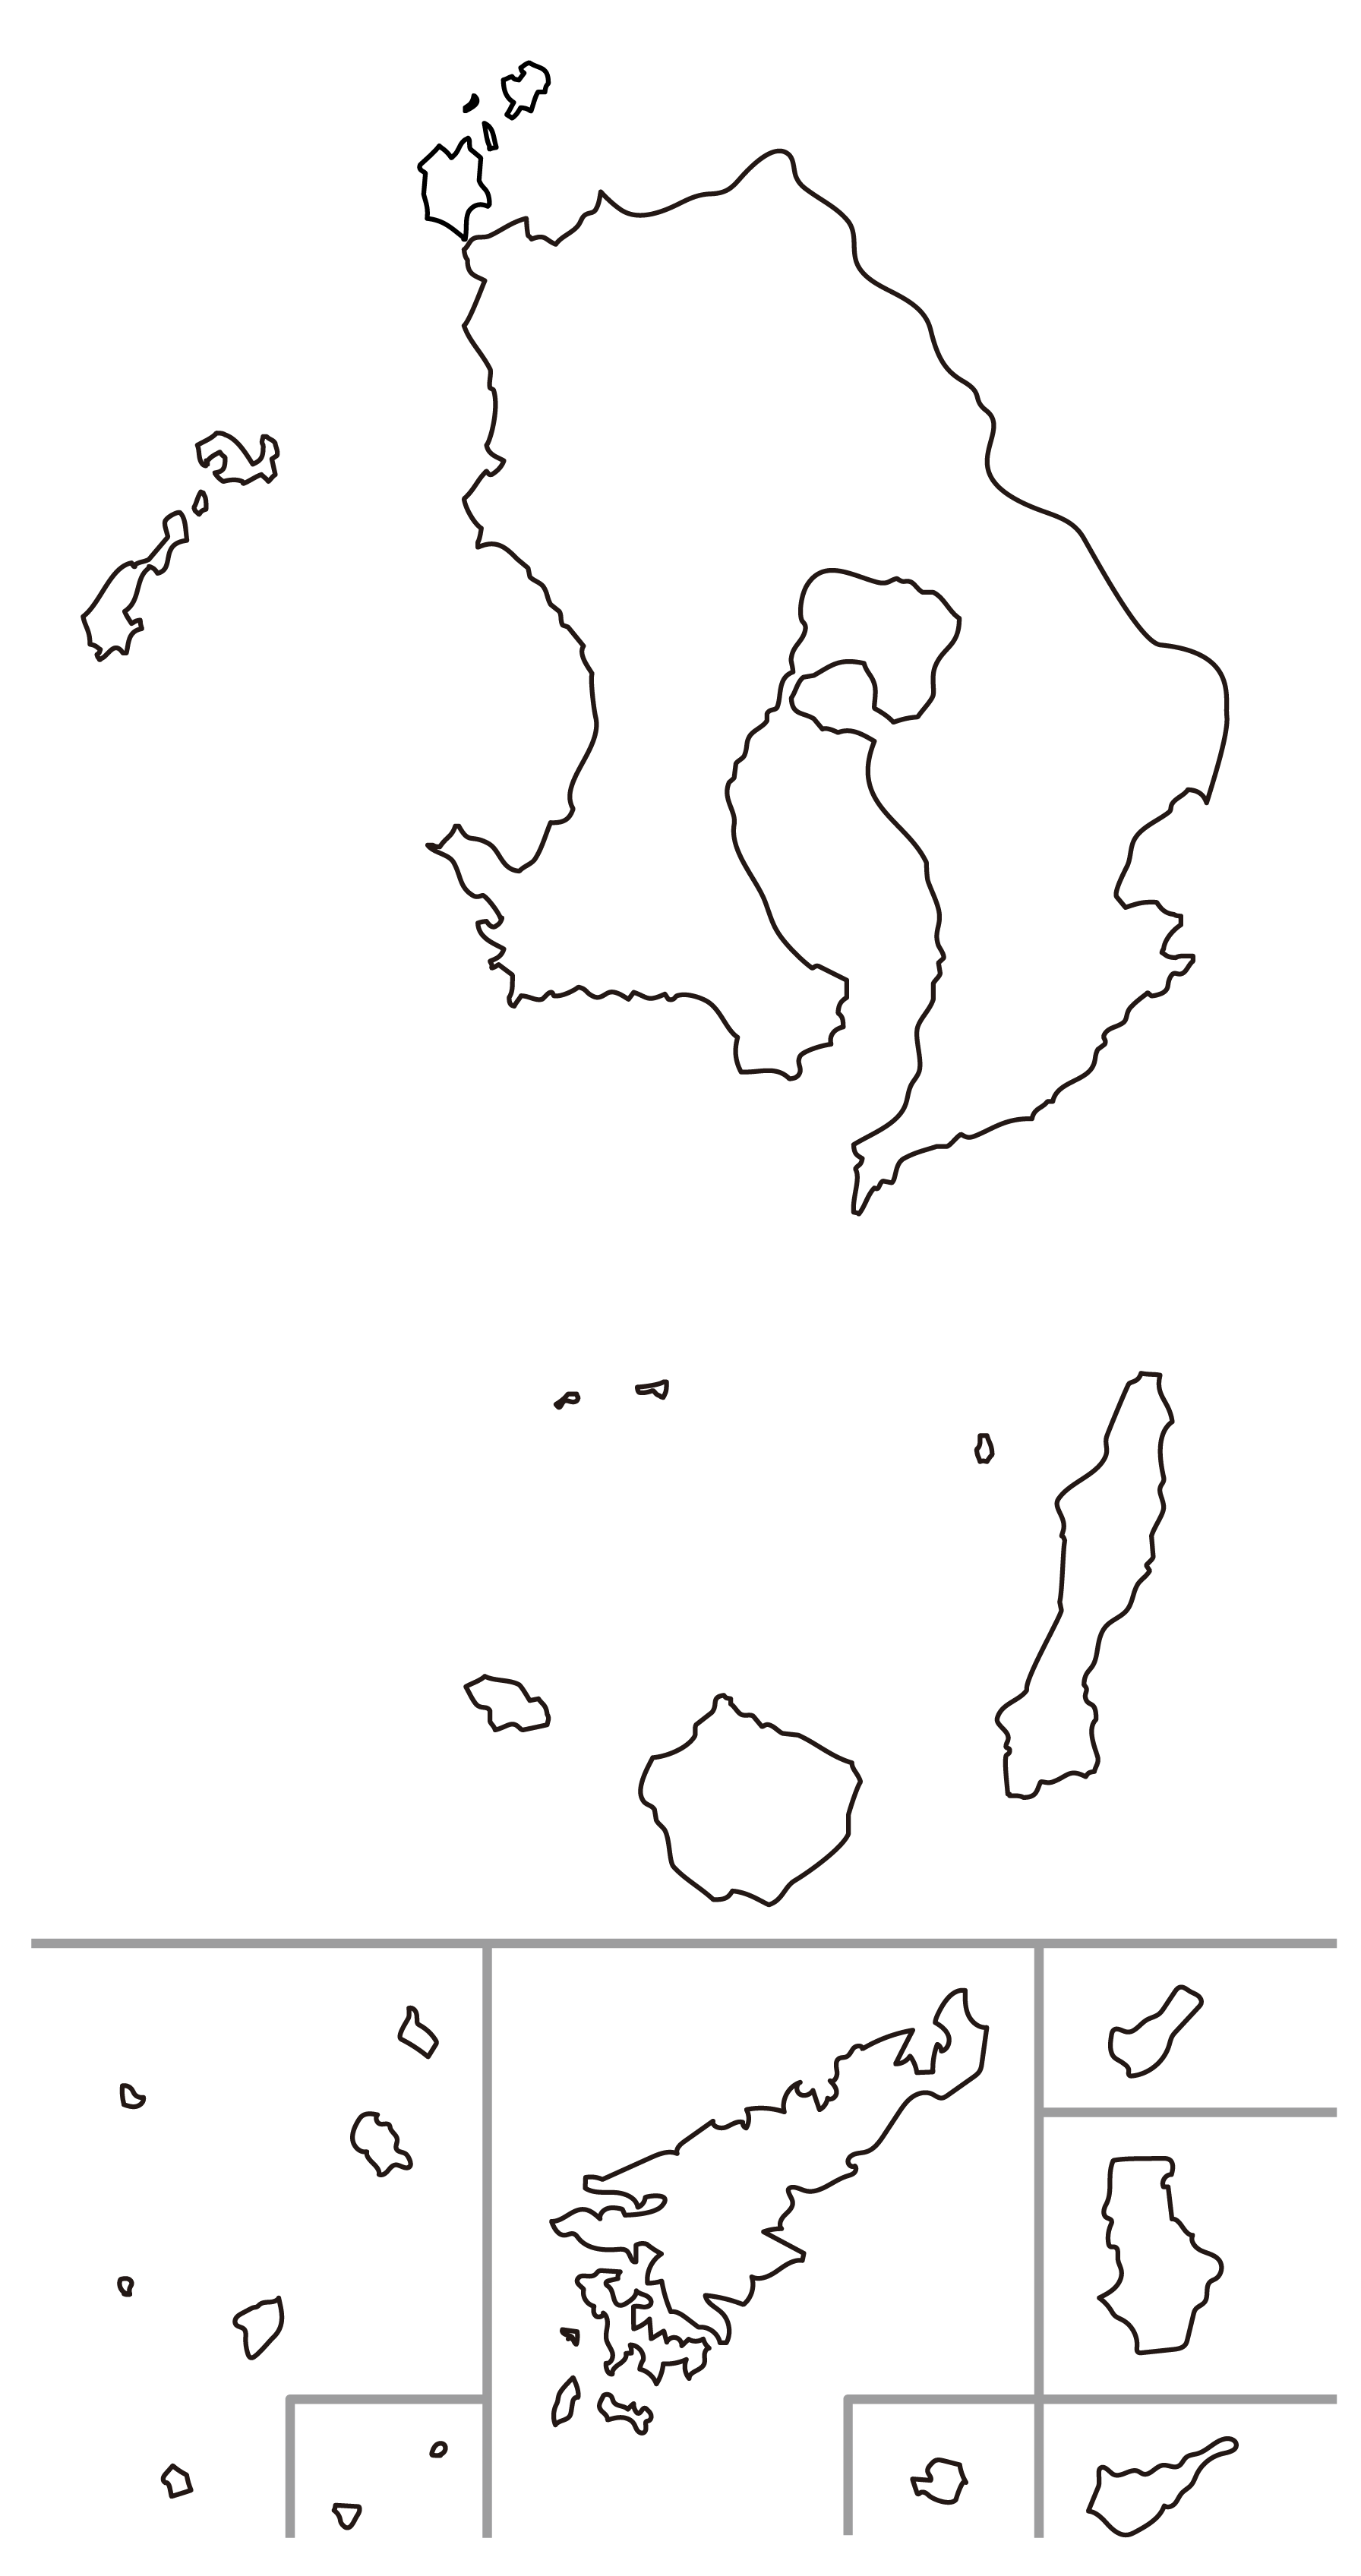 鹿児島県の白地図イラスト無料素材集 県庁所在地 市町村名あり